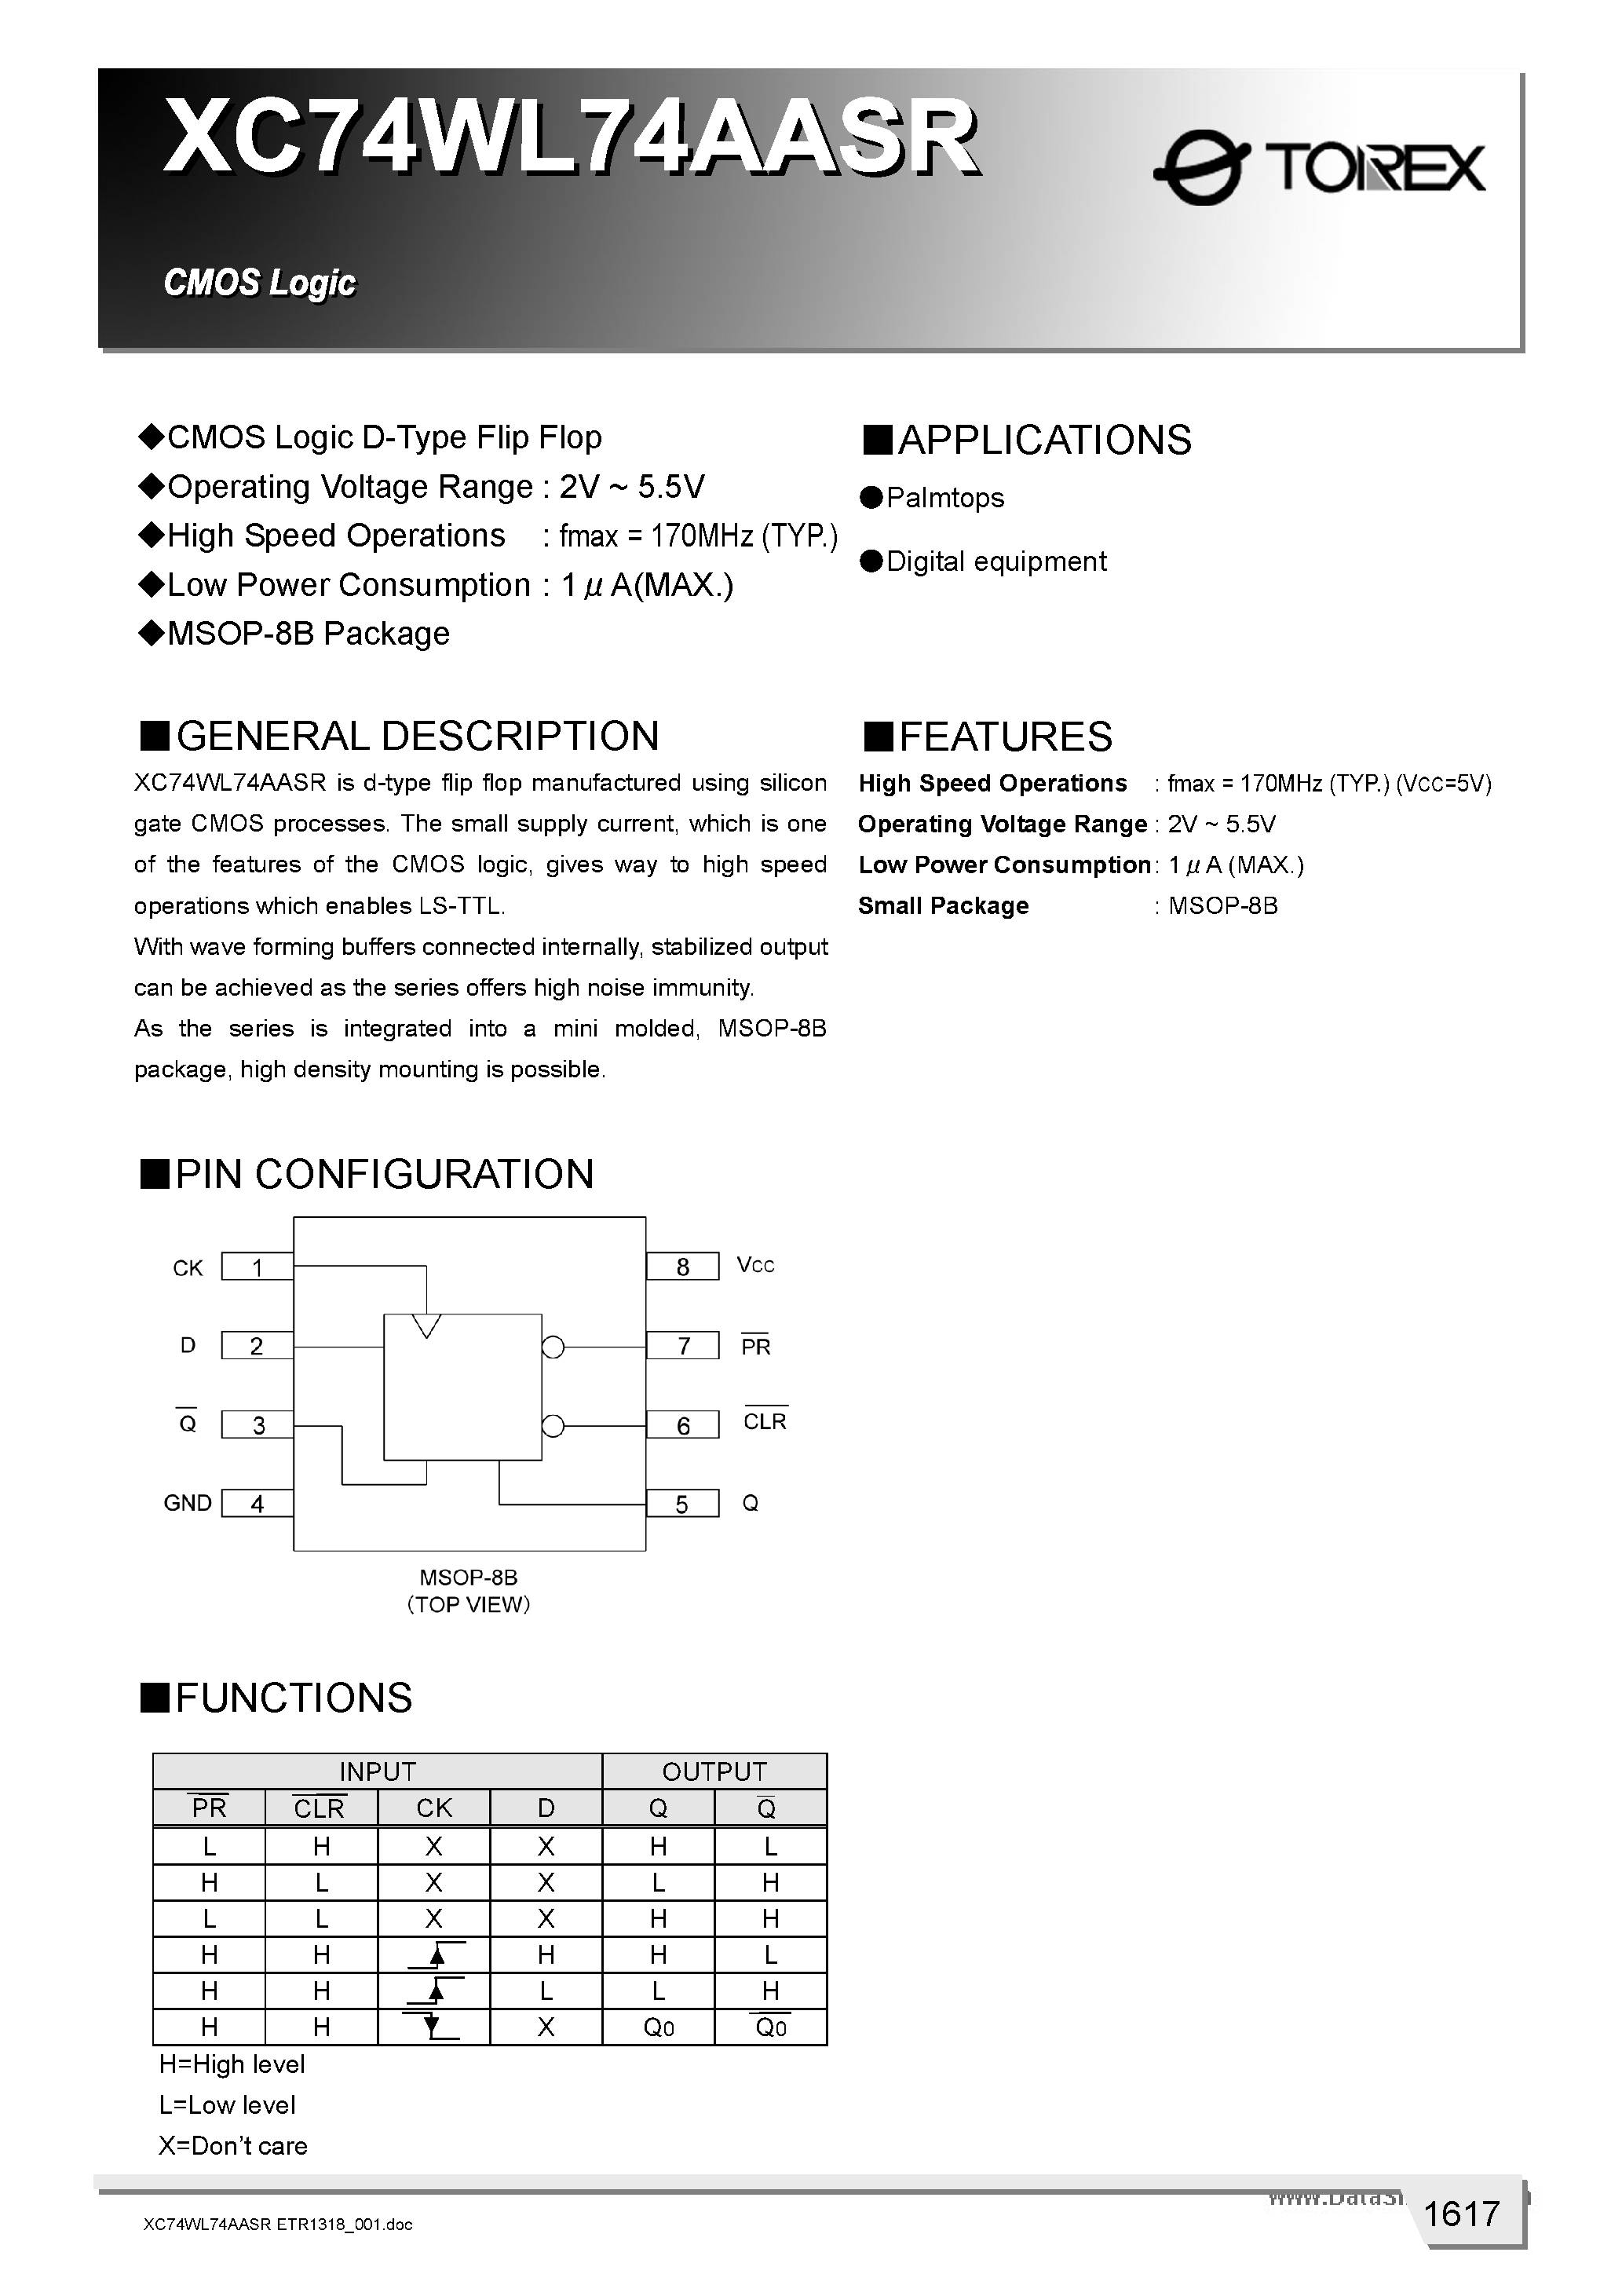 Datasheet XC74WL74AASR - CMOS Logic D-Type Flip Flop page 1